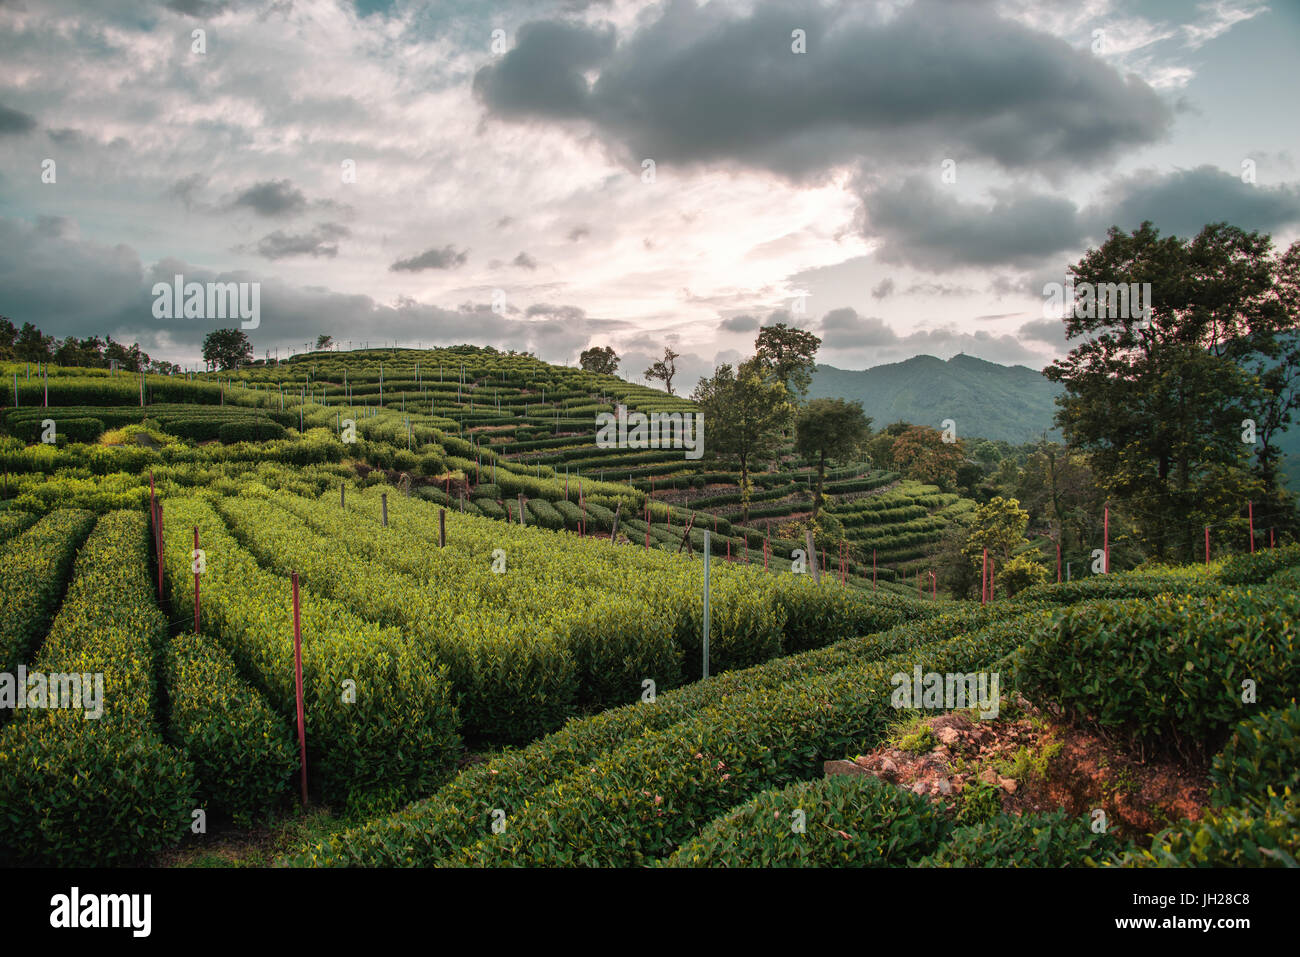 Longjing Tea fields in the hills near West Lake, Hangzhou, Zhejiang, China, Asia Stock Photo